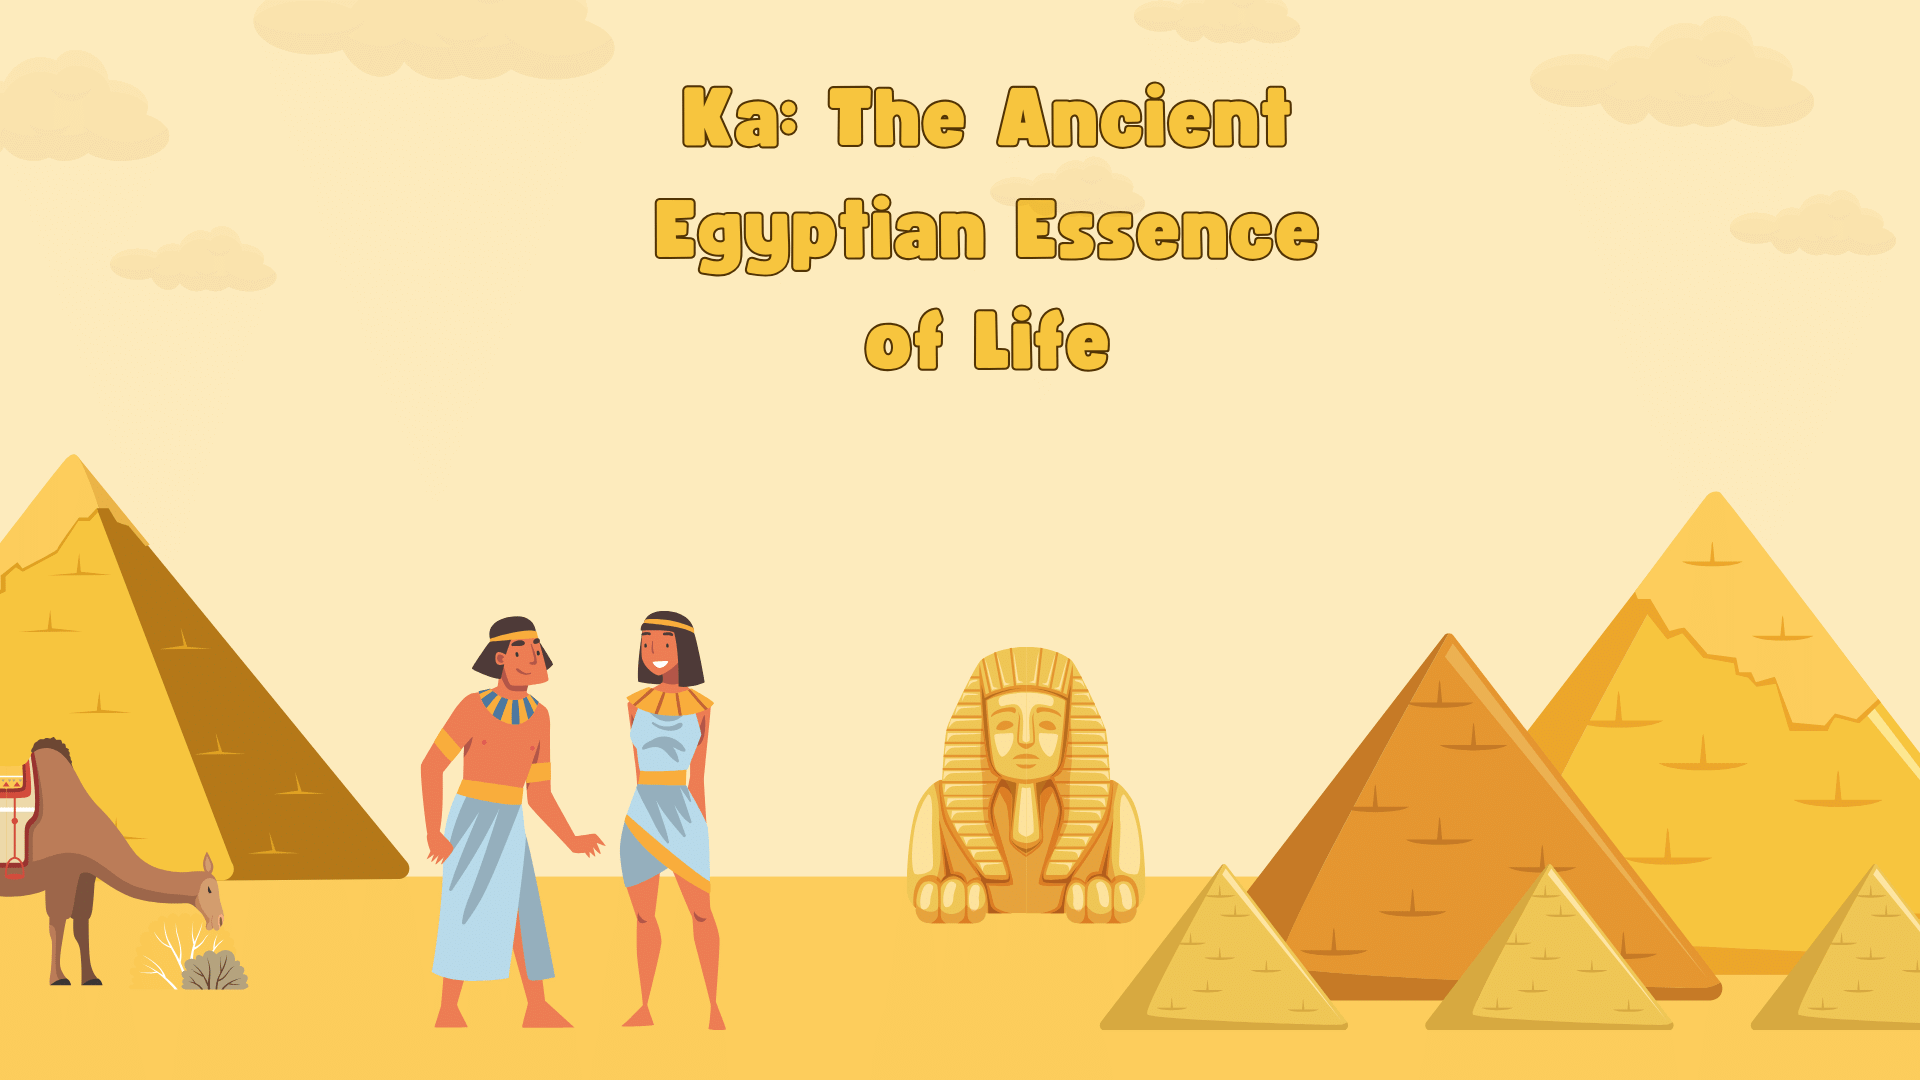 Ka: The Ancient Egyptian Essence of Life